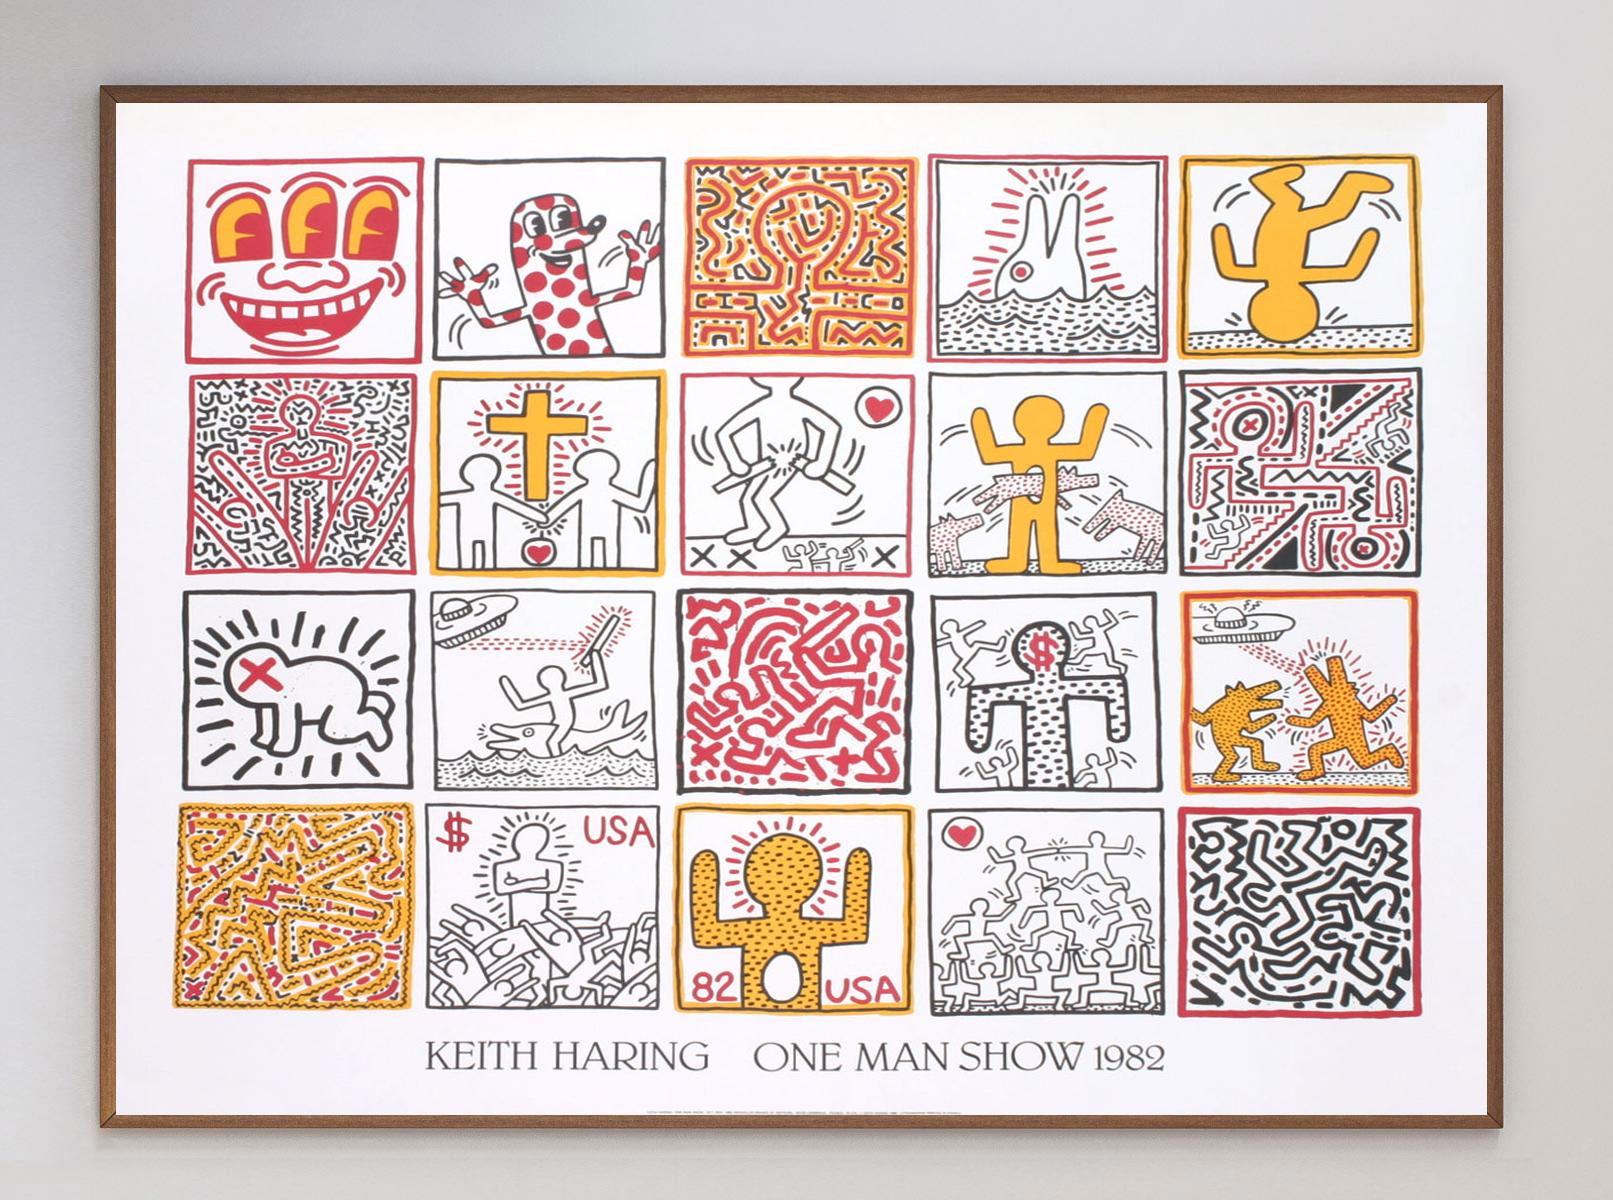 Wunderschöne Lithografie, die 1986 von Nouvelles Images gedruckt wurde und 20 Werke von Keith Haring für die 